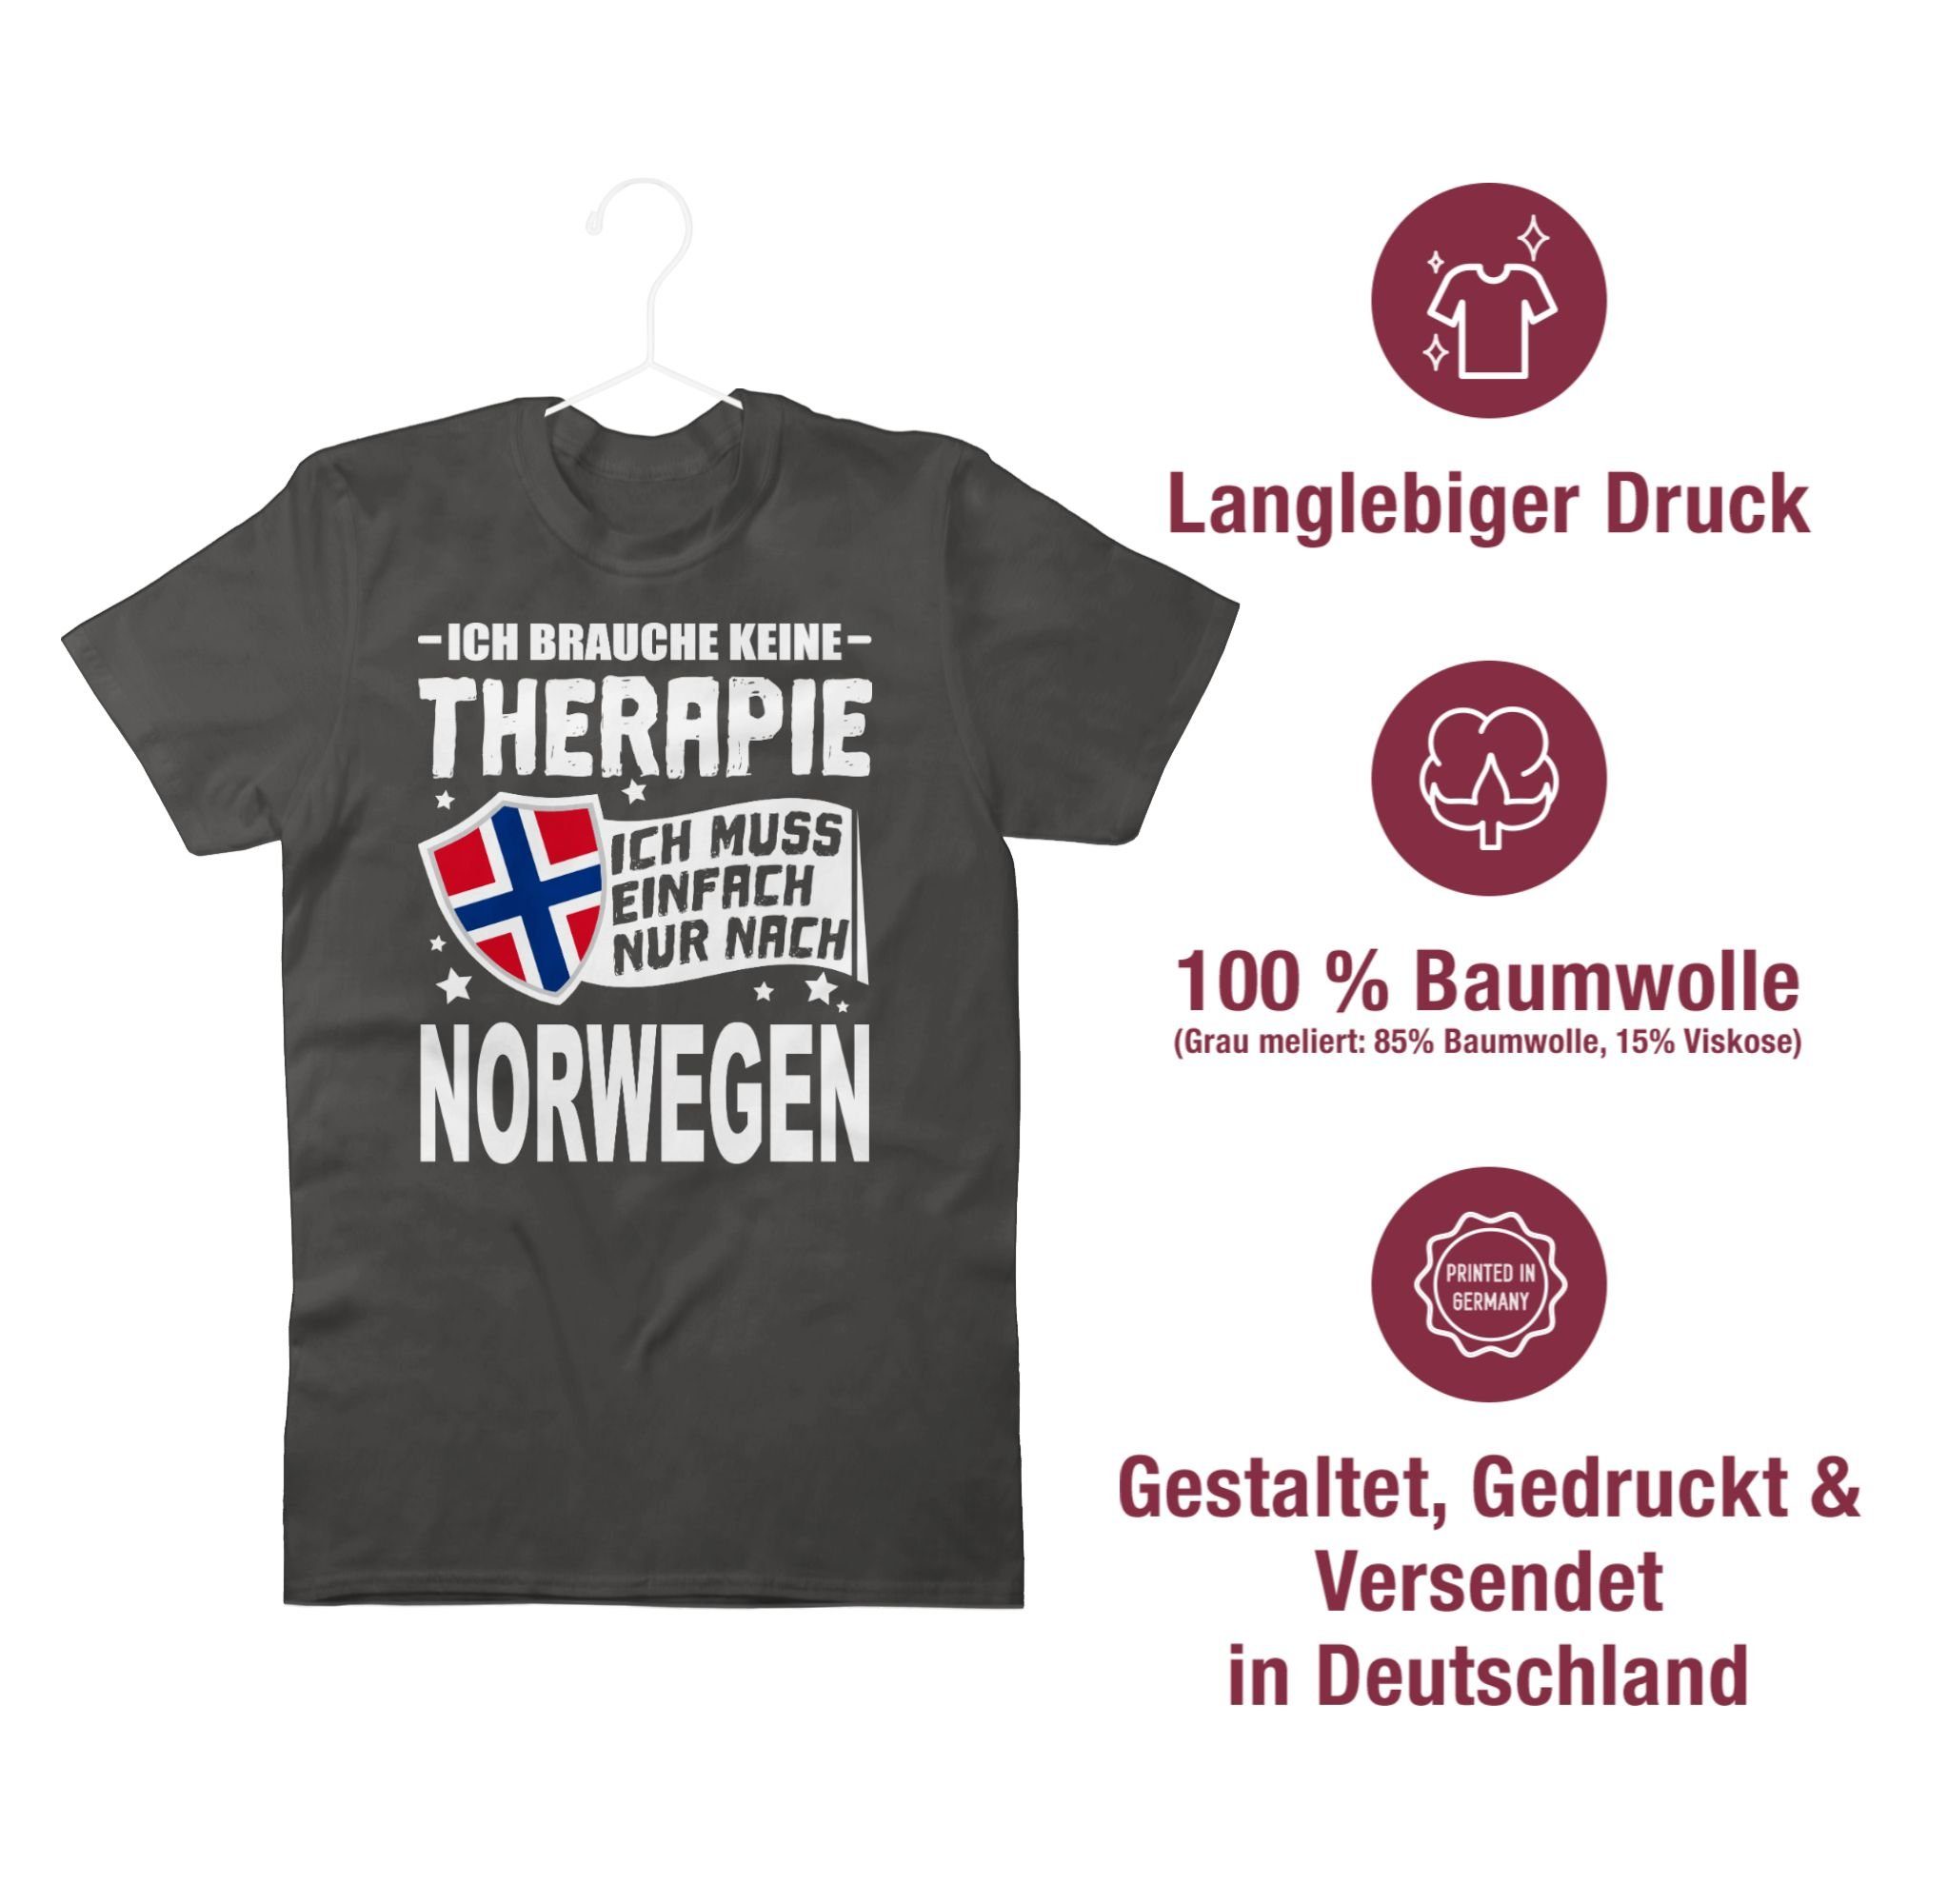 T-Shirt muss Dunkelgrau brauche Länder Ich nur Therapie - einfach keine Wappen 2 nach Ich Shirtracer Norwegen weiß